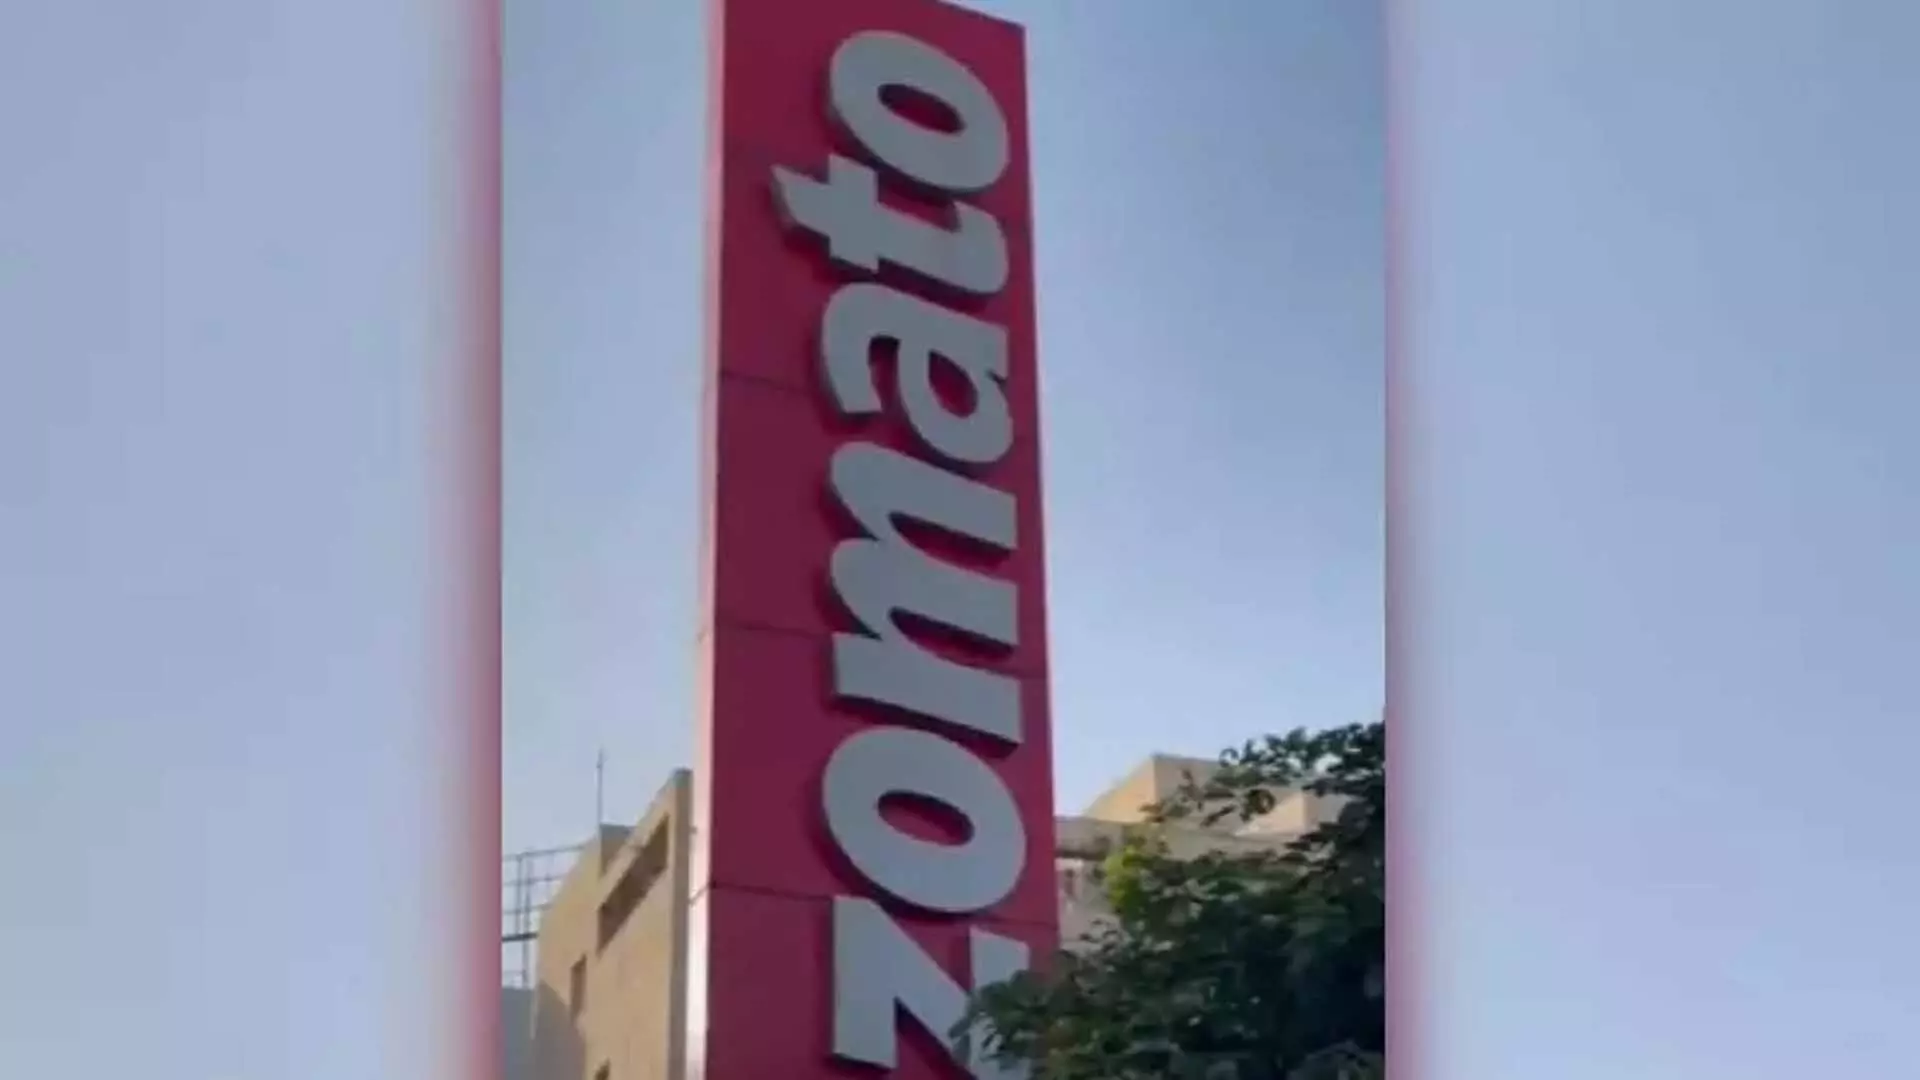 Zomato ने मार्च तक ग्राहकों से प्लेटफ़ॉर्म शुल्क के रूप में 83 करोड़ एकत्र किए